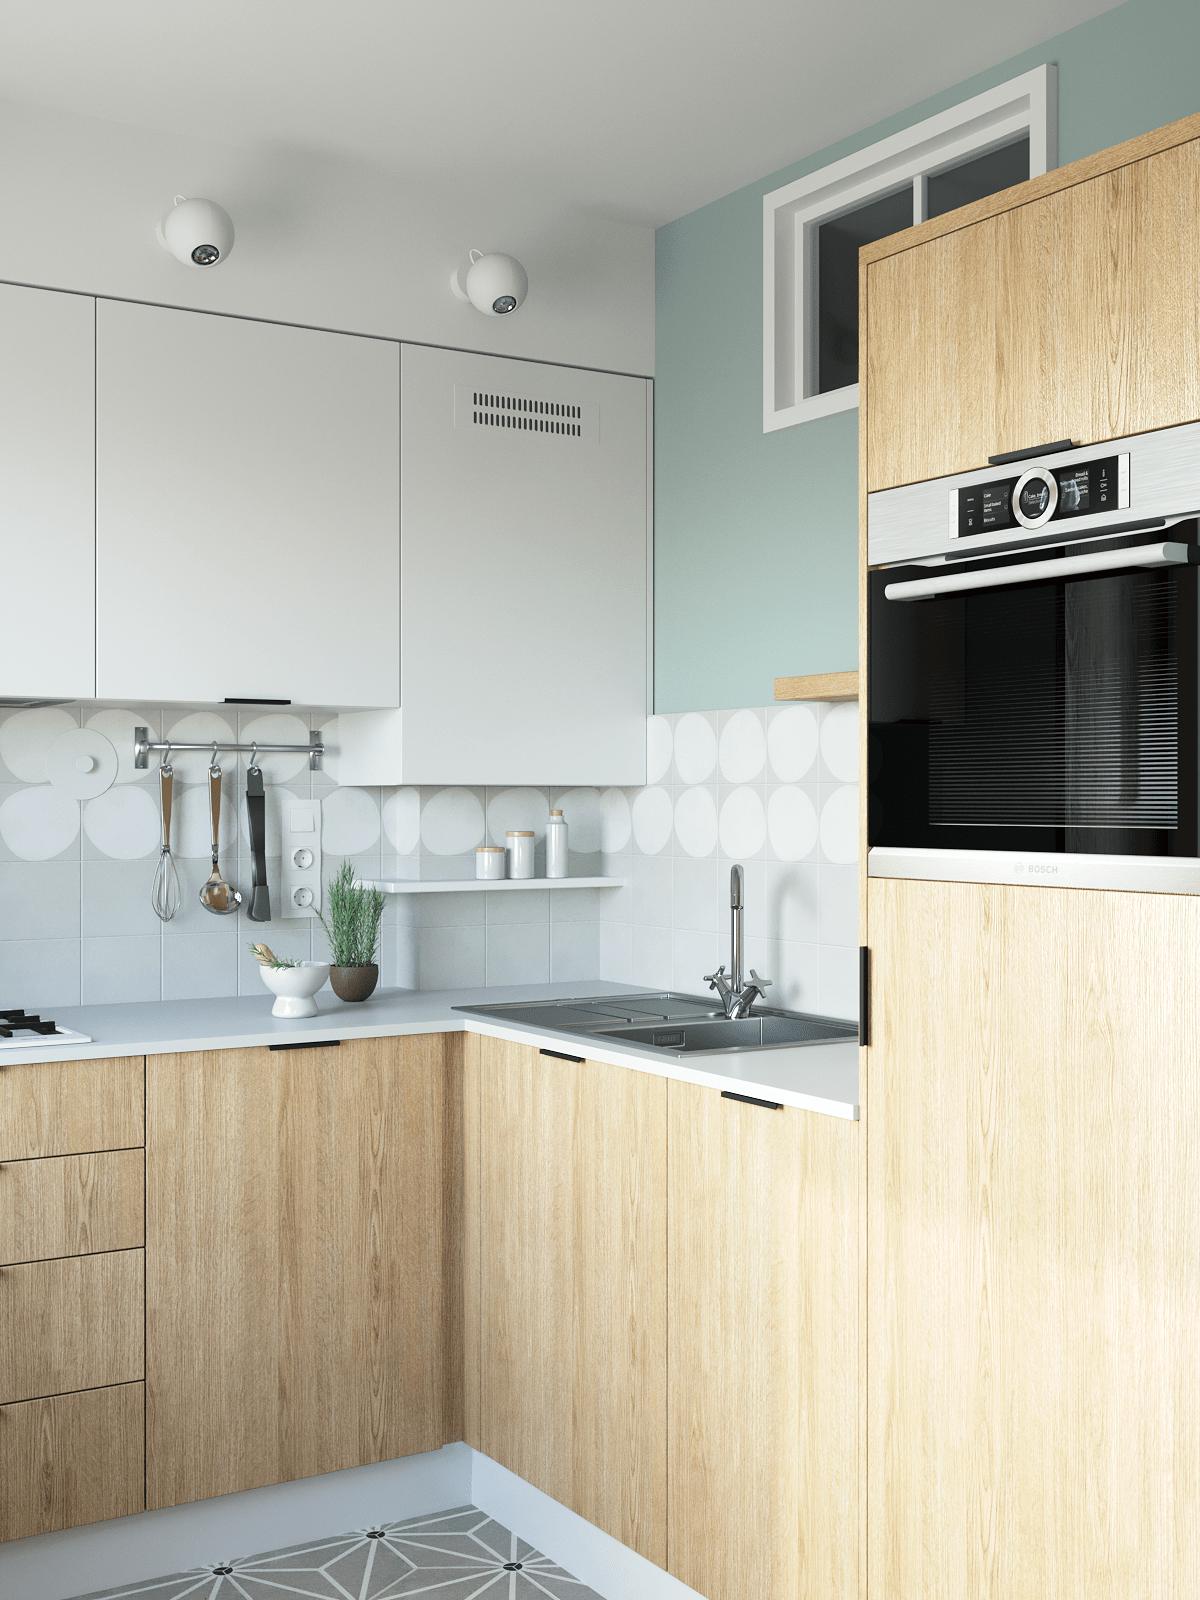 Phòng bếp tuy không rộng rãi nhưng đáp ứng đầy đủ tiện nghi, hệ tủ gỗ và tủ màu trắng tạo nên cái nhìn tương phản đẹp mắt. 